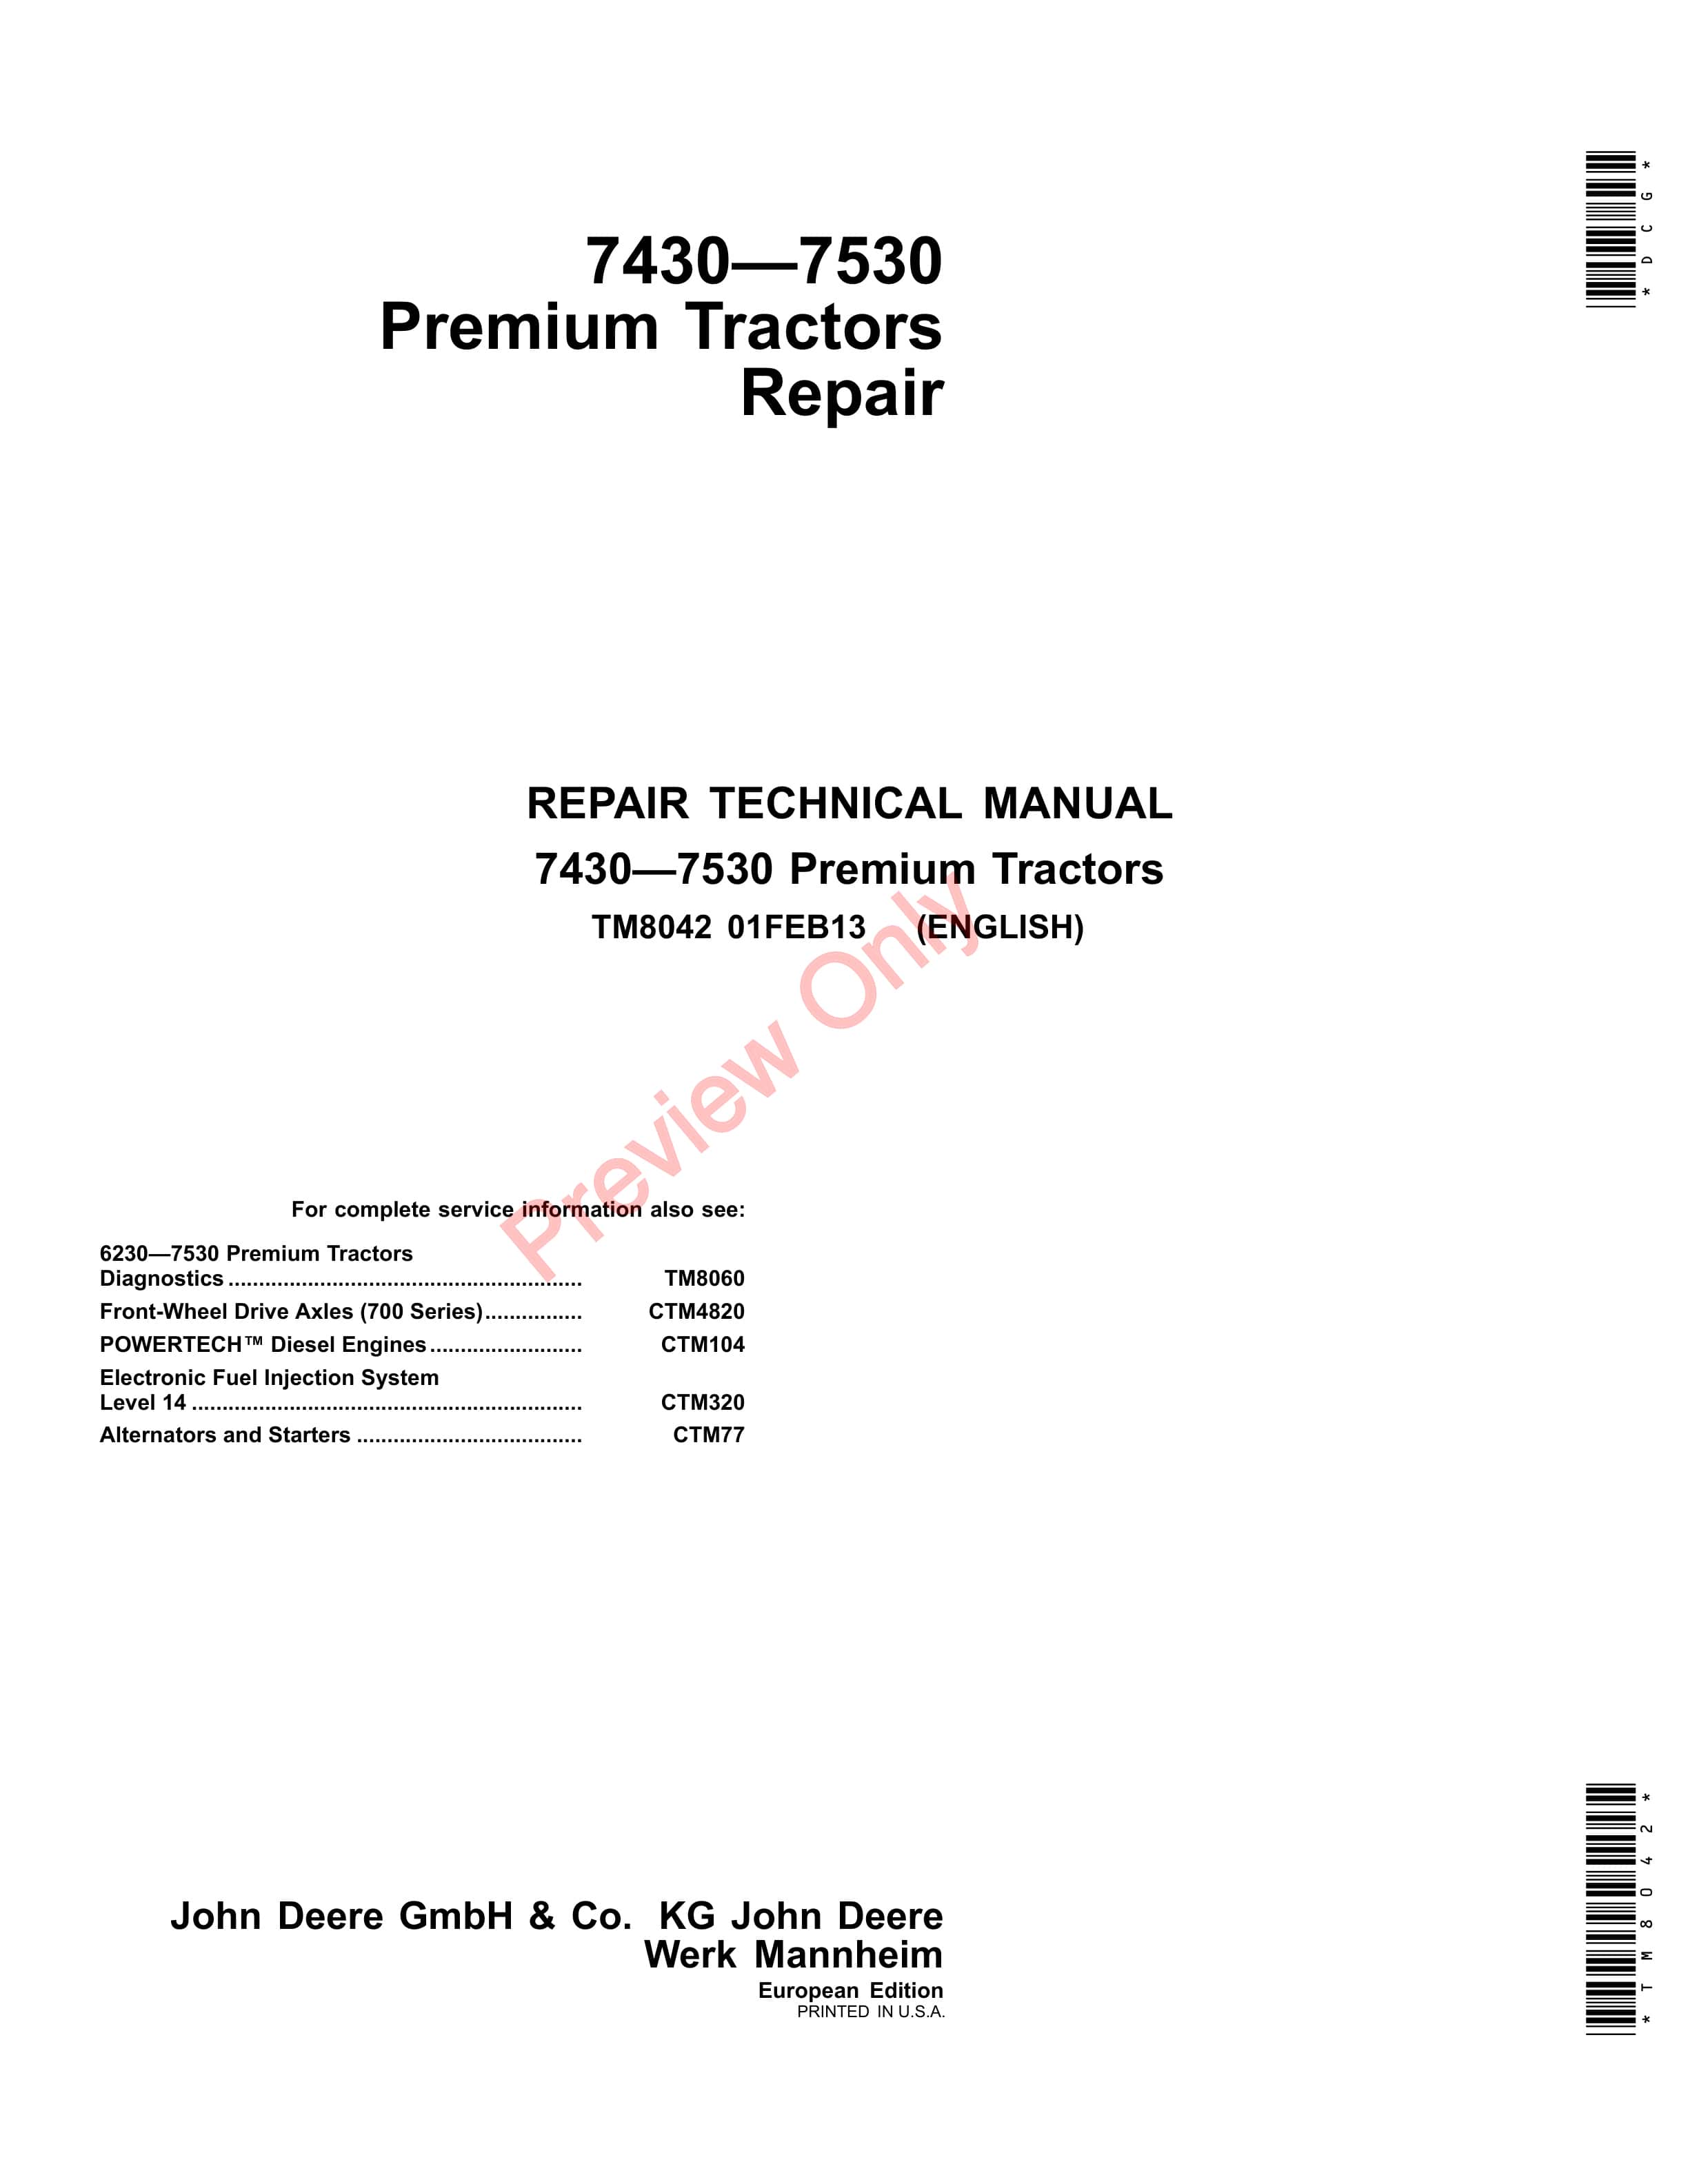 John Deere 7430 and 7530 Premium Tractors Repair Technical Manual TM8042 01FEB13 1